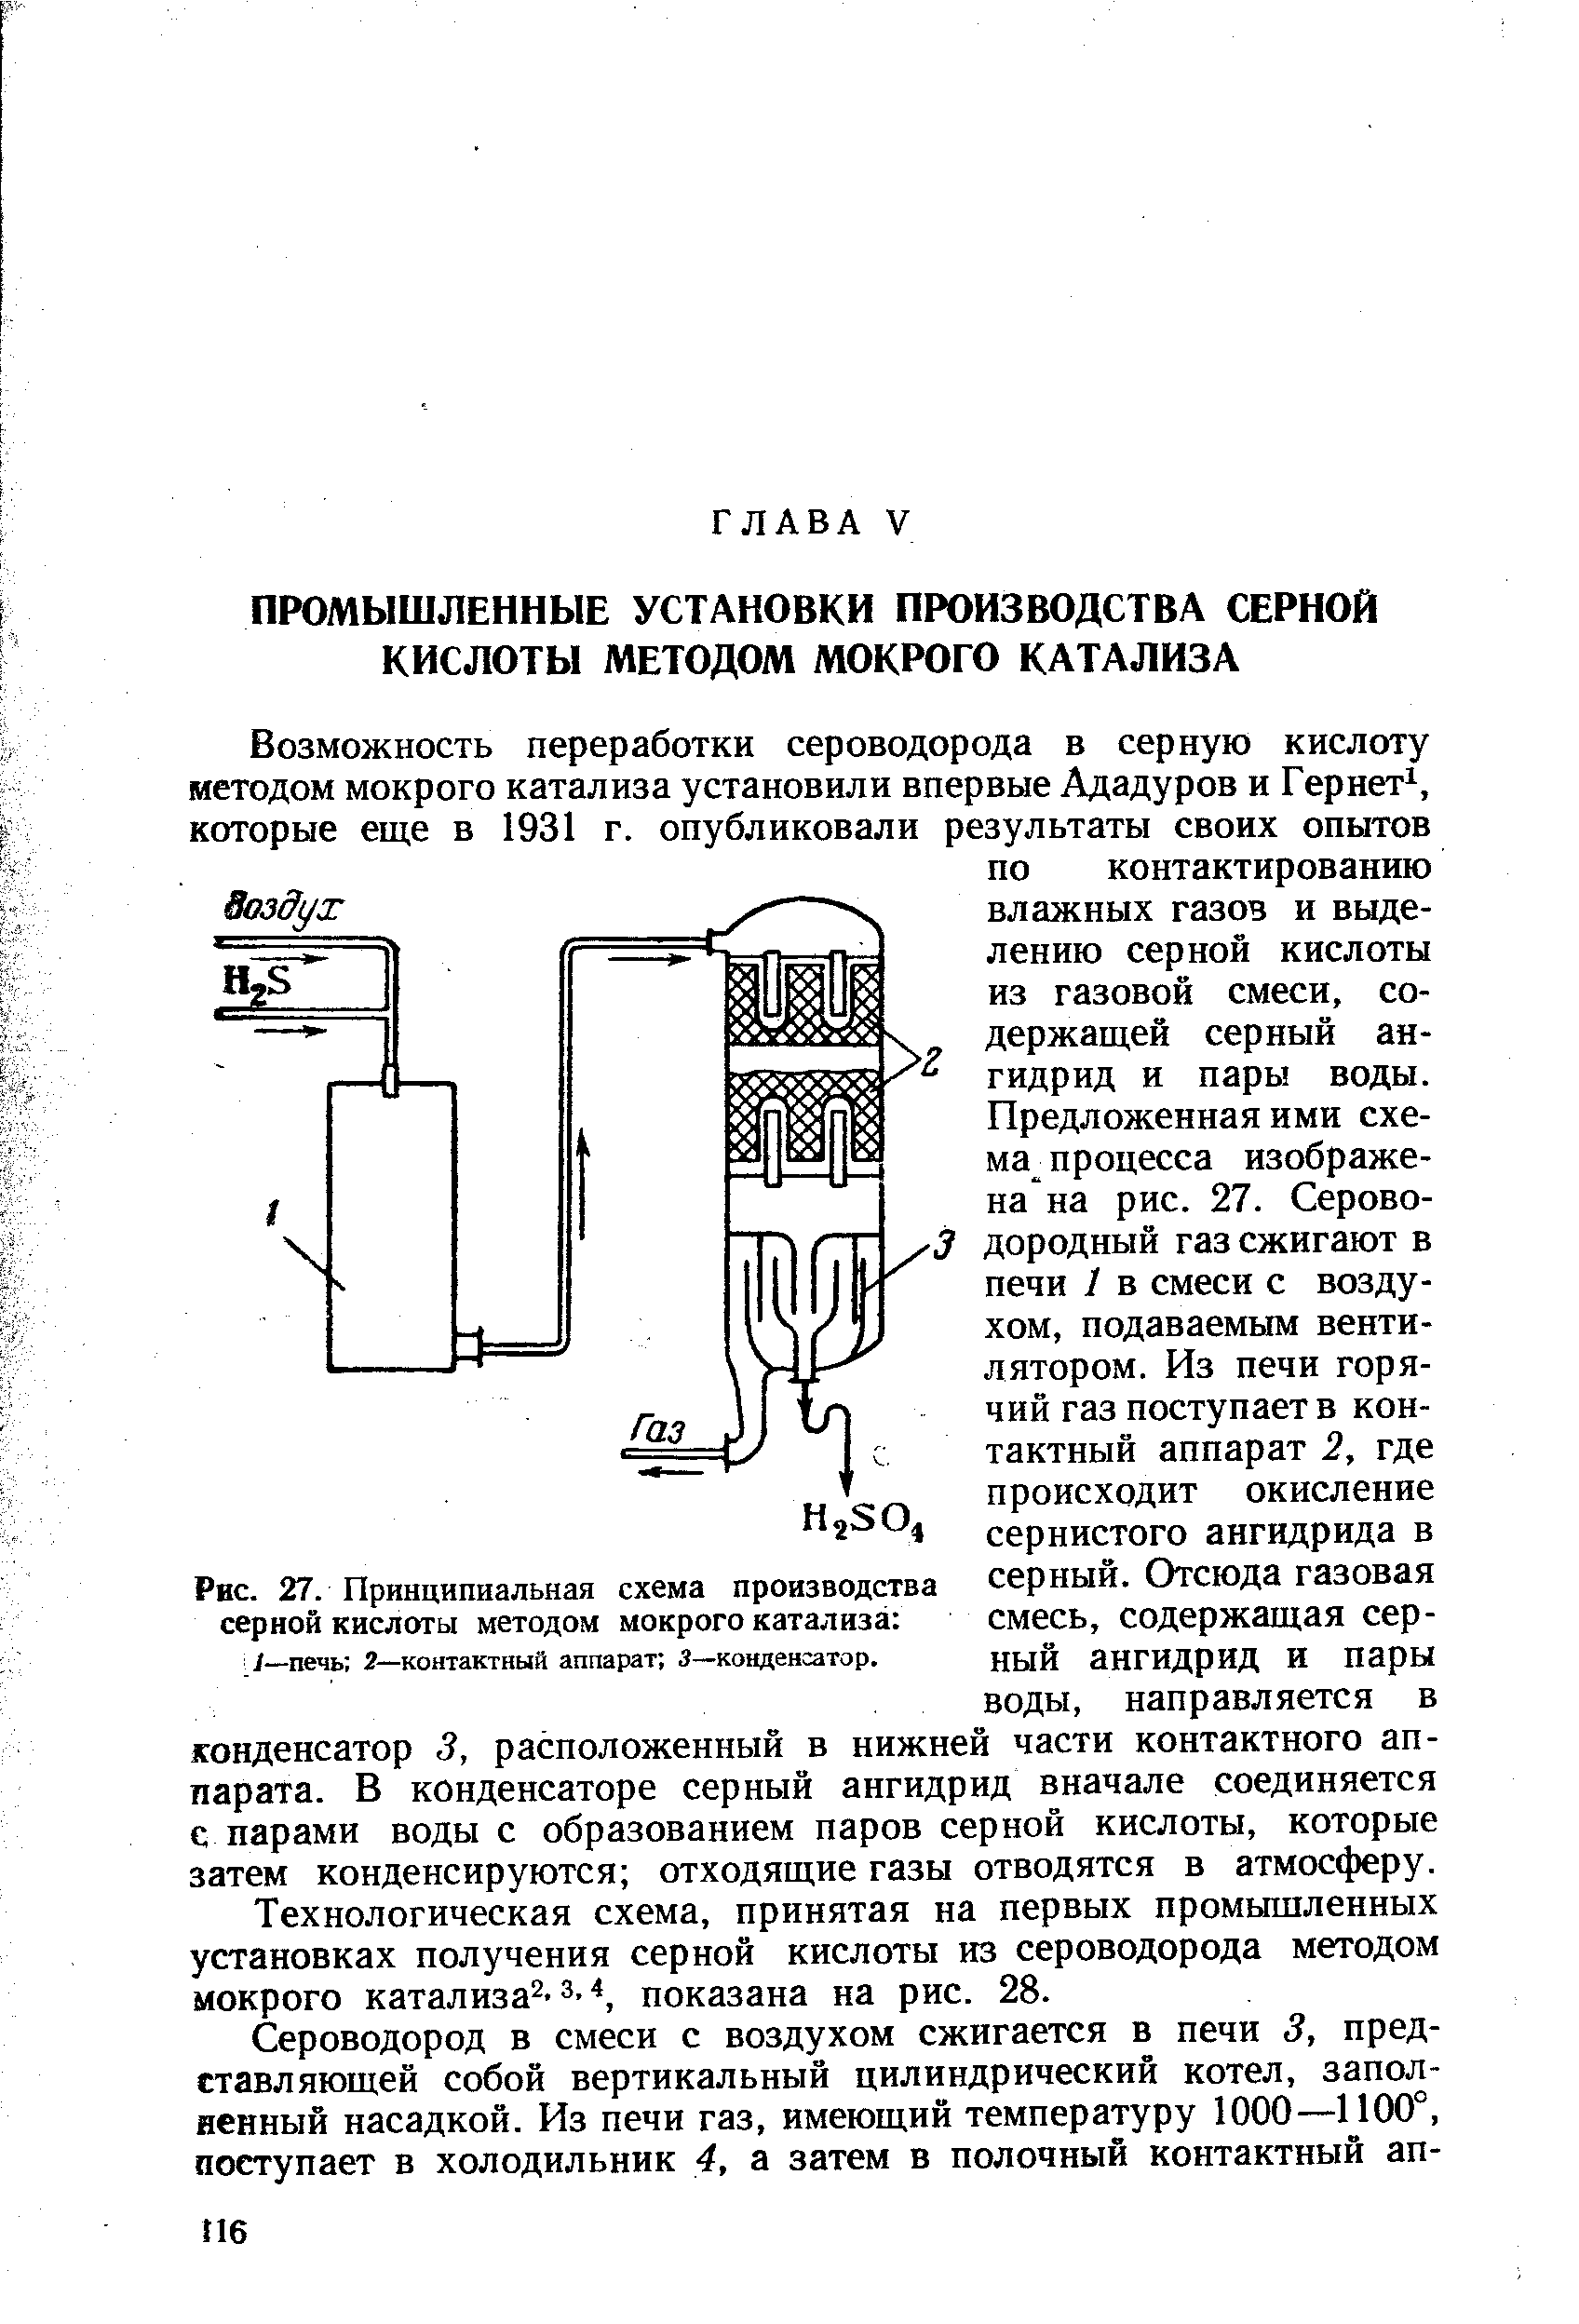 Технологическая схема, принятая на первых промышленных установках получения серной кислоты из сероводорода методом мокрого кaтaлизa 3.4, показана на рис. 28.